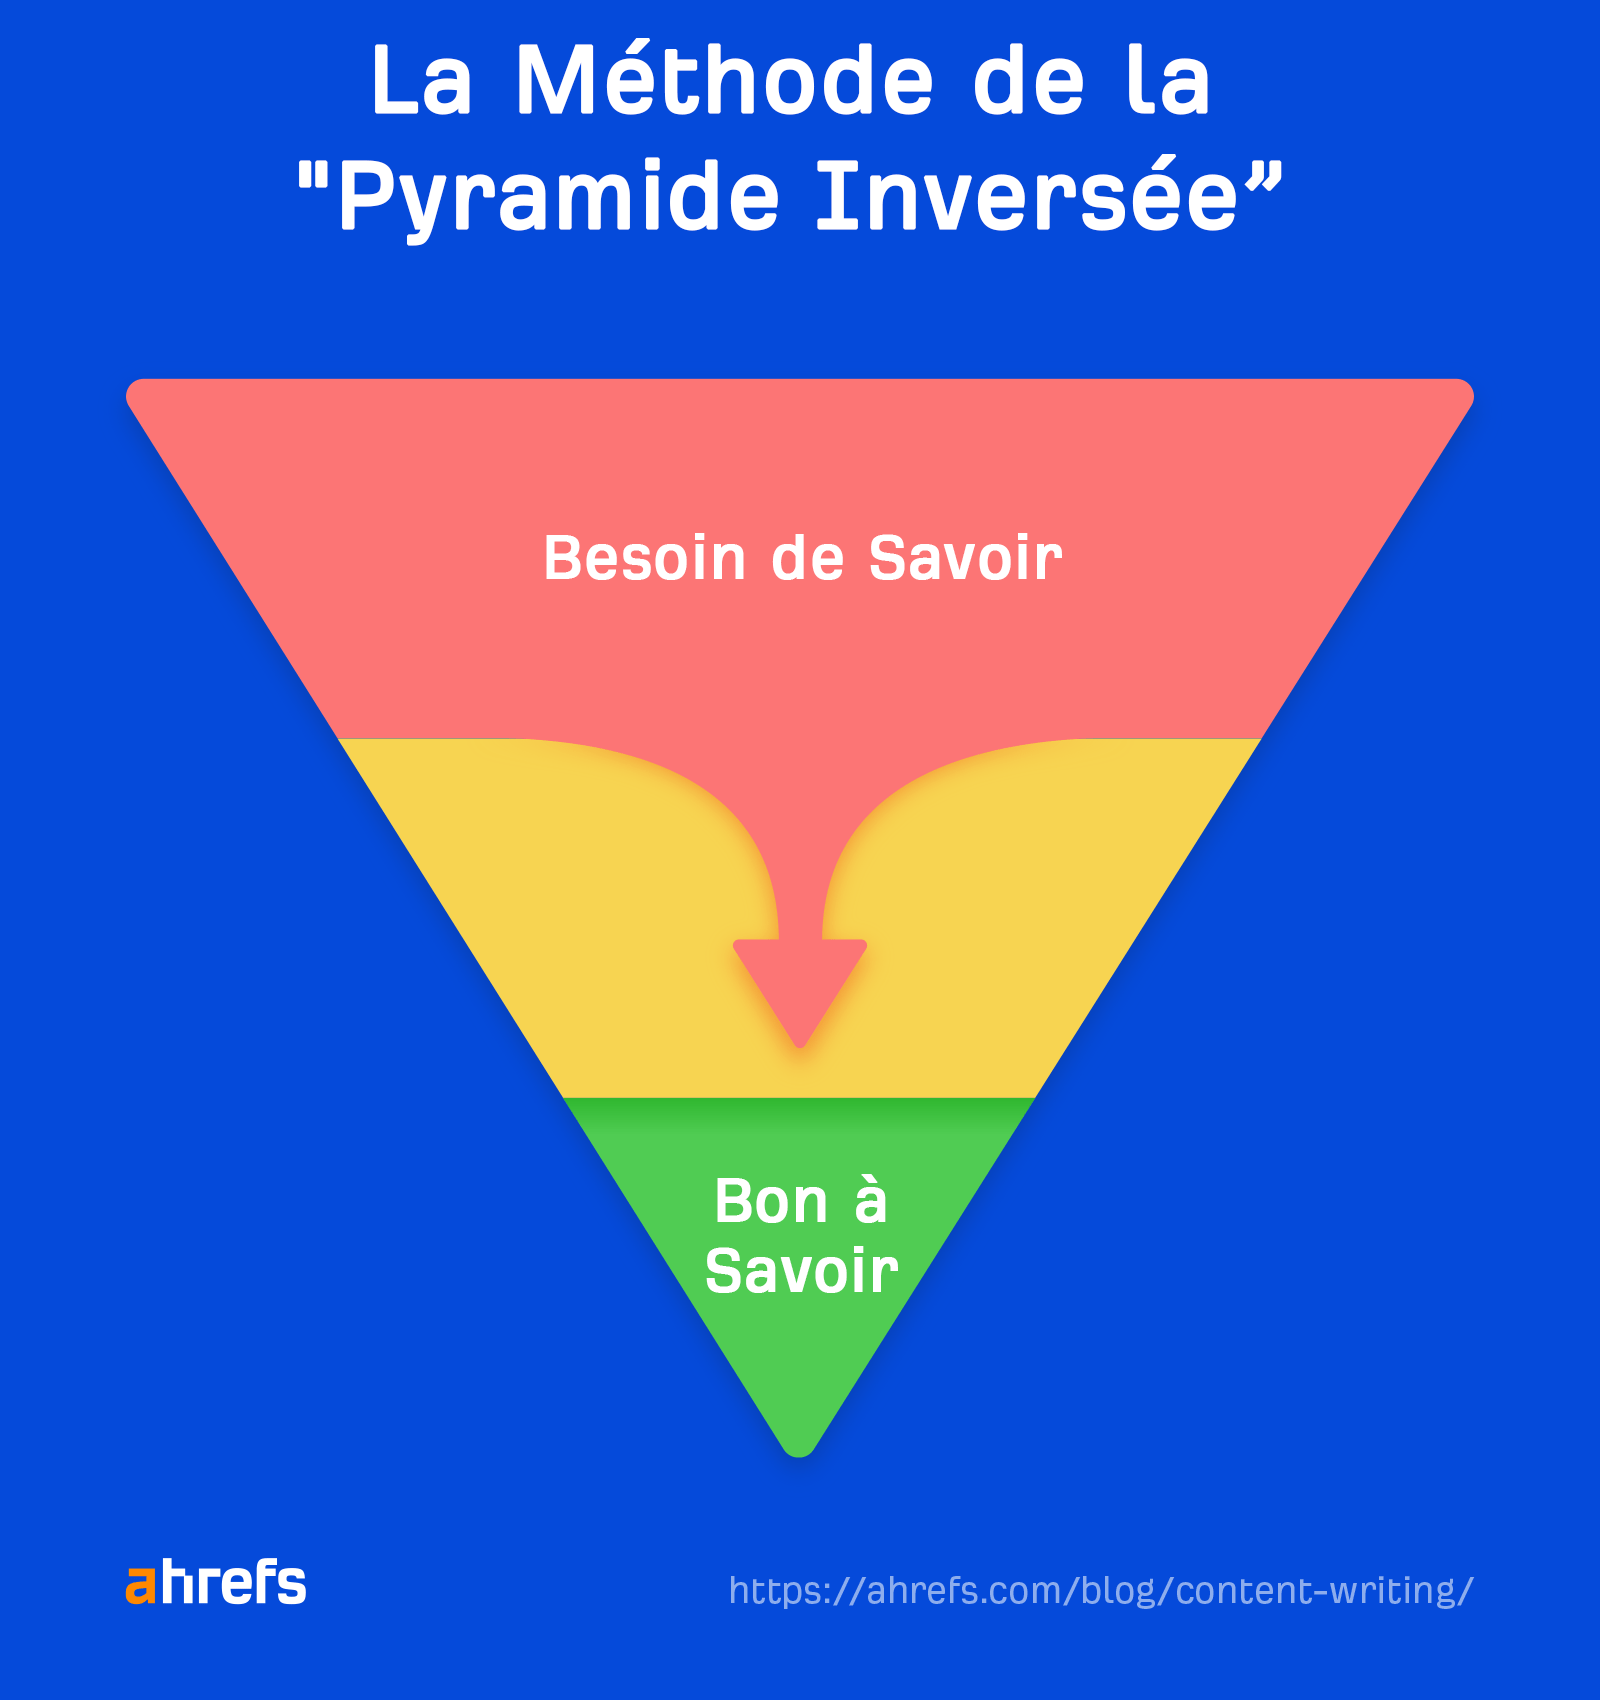 La méthode de la pyramide inversée